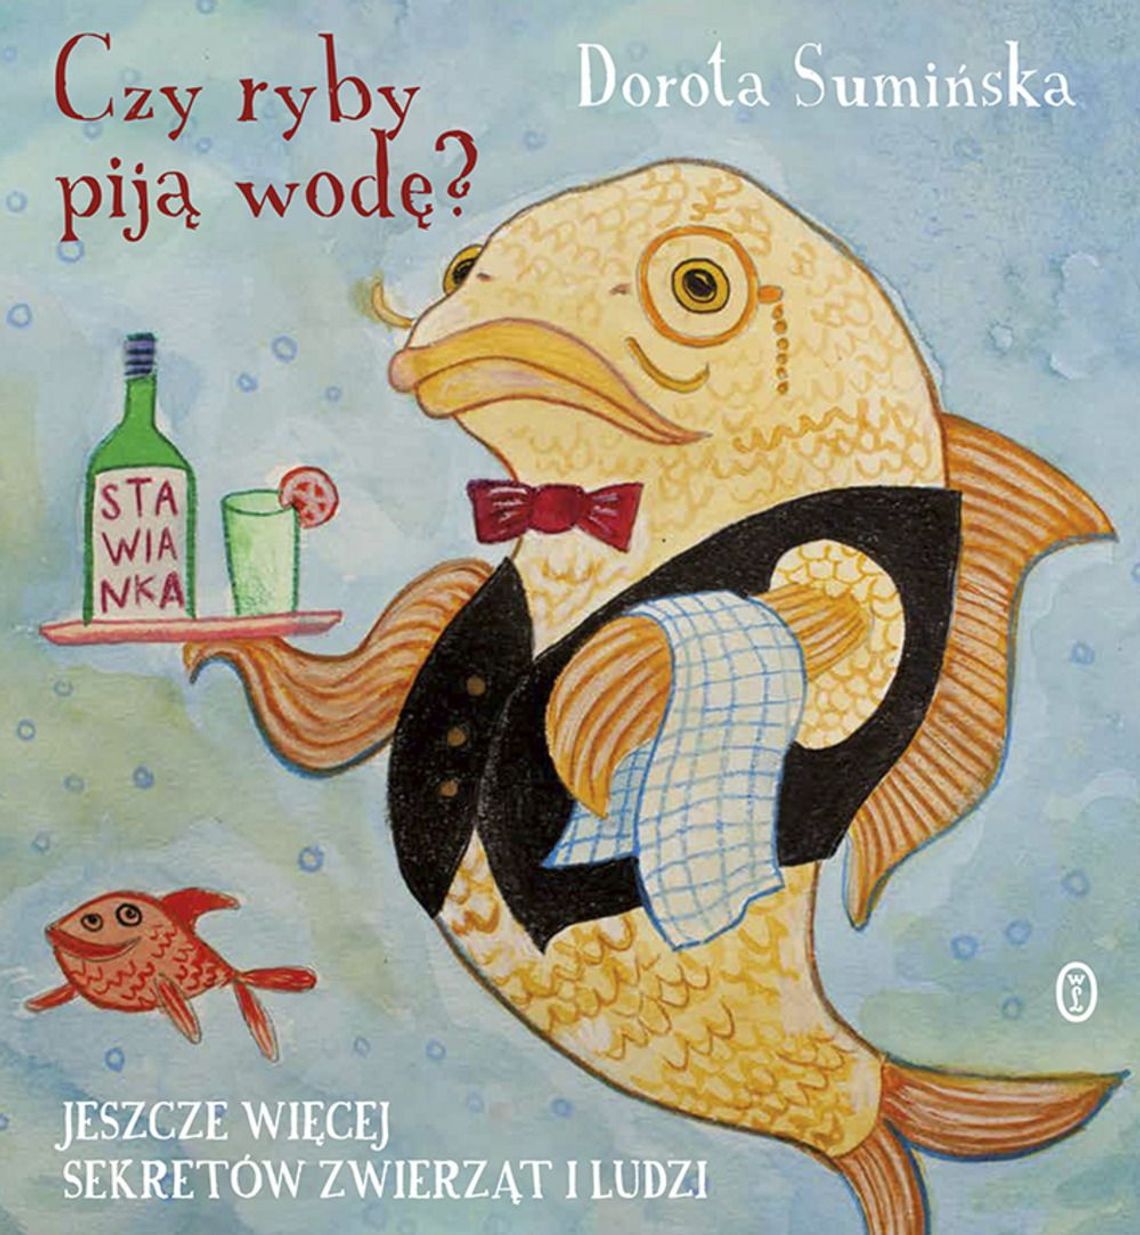 Dorota Sumińska "Czy ryby piją wodę? Jeszcze więcej sekretów zwierząt i ludzi"; wyd. Literackie